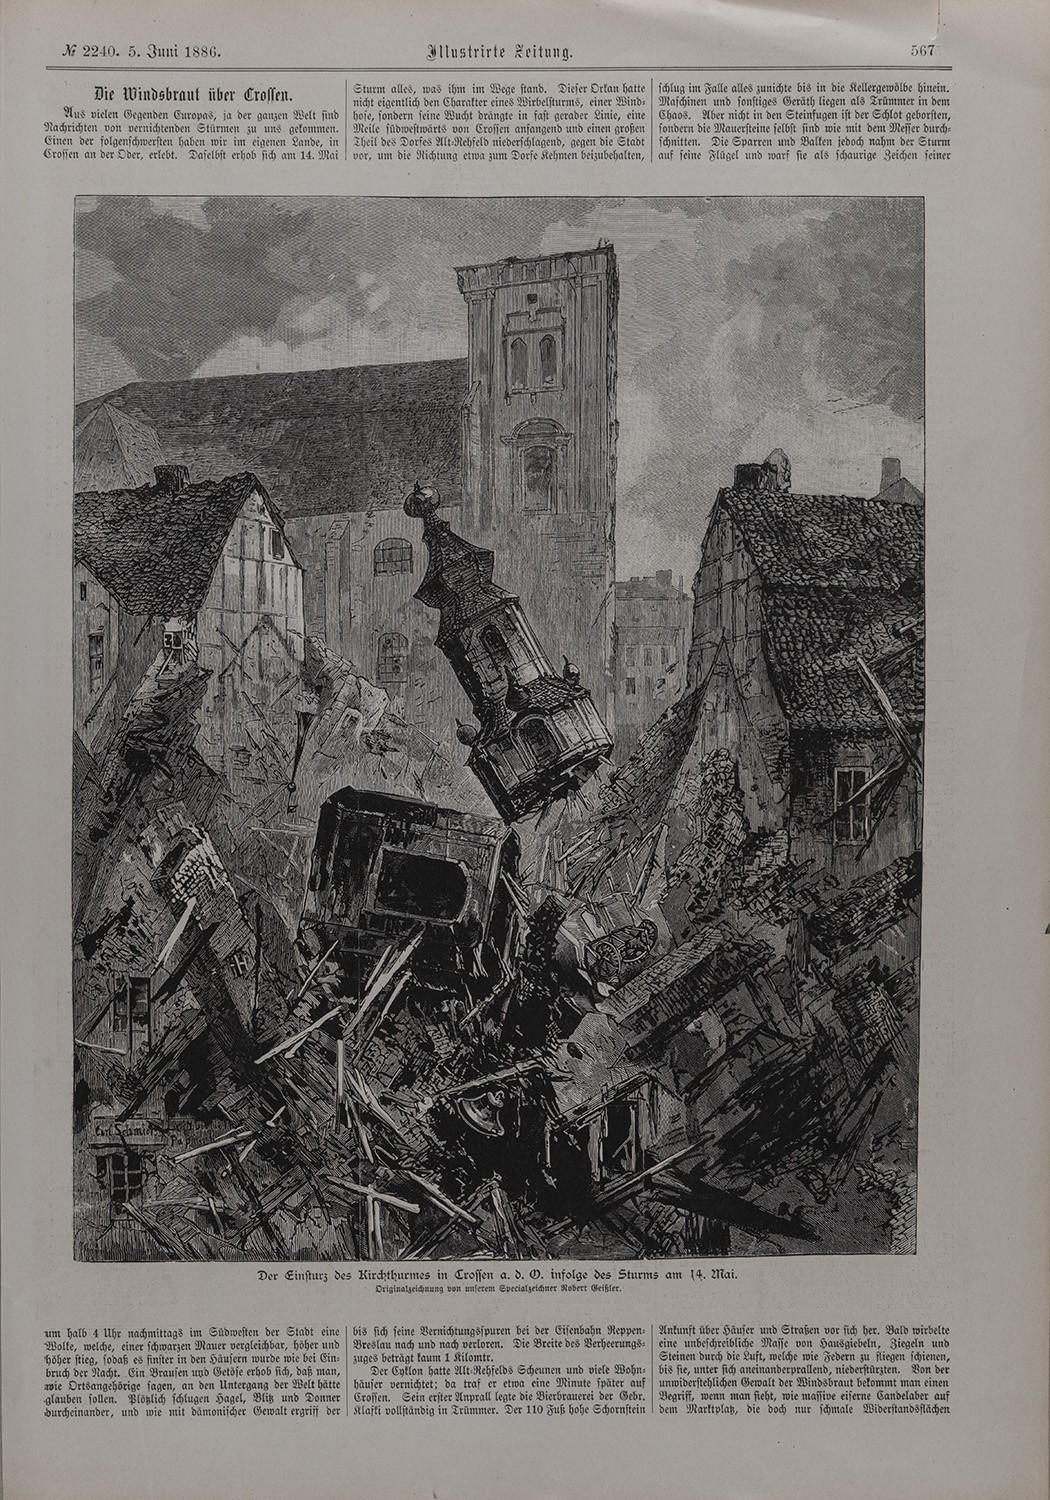 Crossen/Oder: Einsturz des Kirchturms durch einen Tornado am 14. Mai 1886 (Landesgeschichtliche Vereinigung für die Mark Brandenburg e.V., Archiv CC BY)